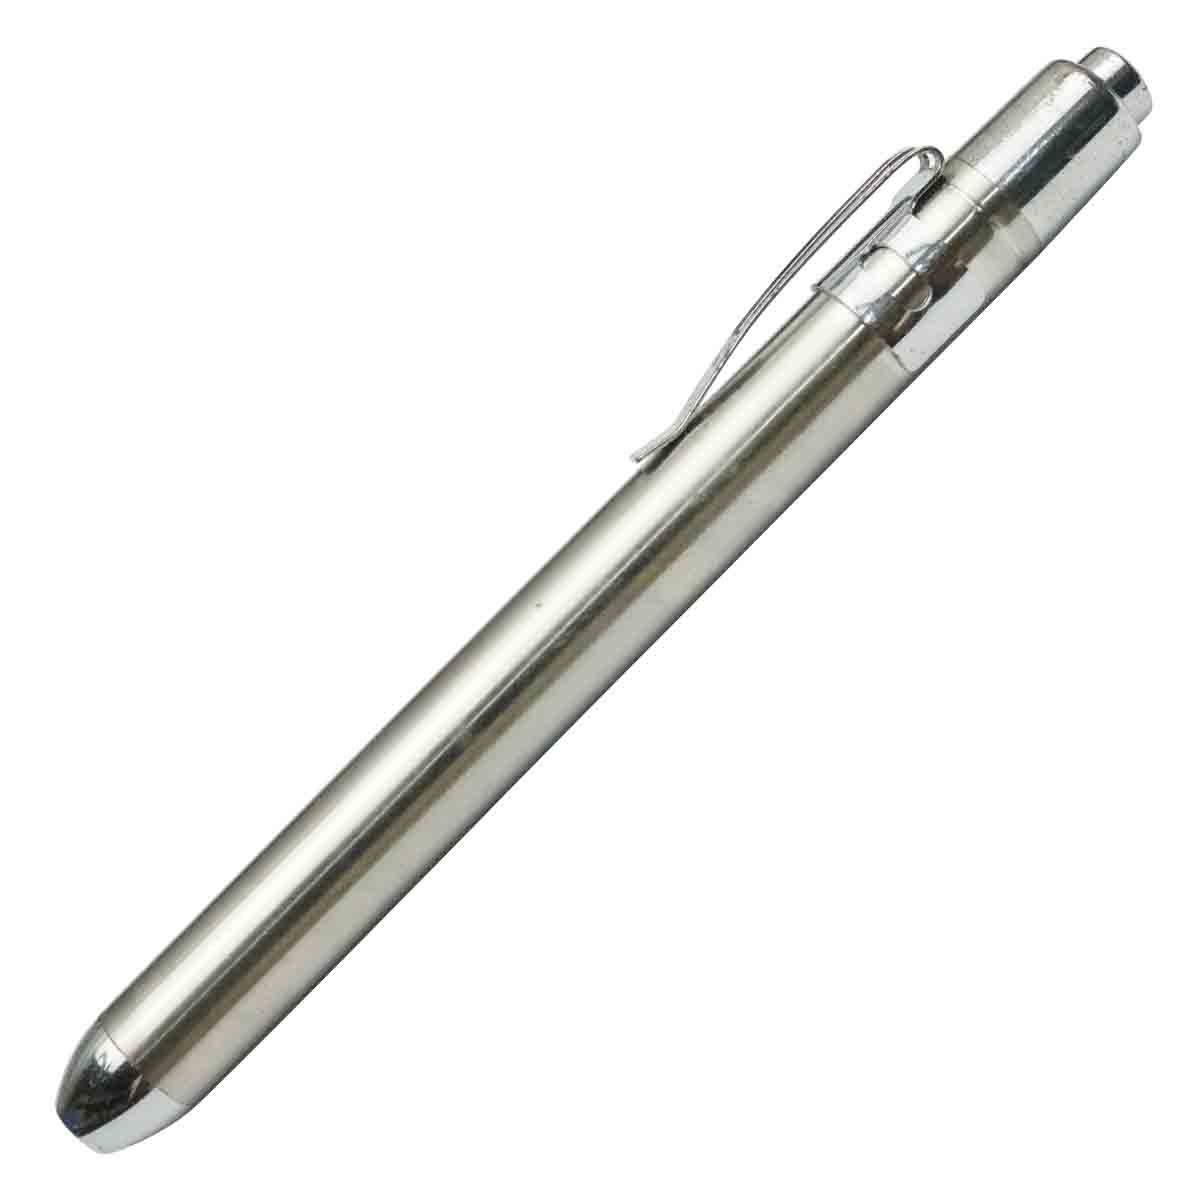 Torch Pen Model 50025